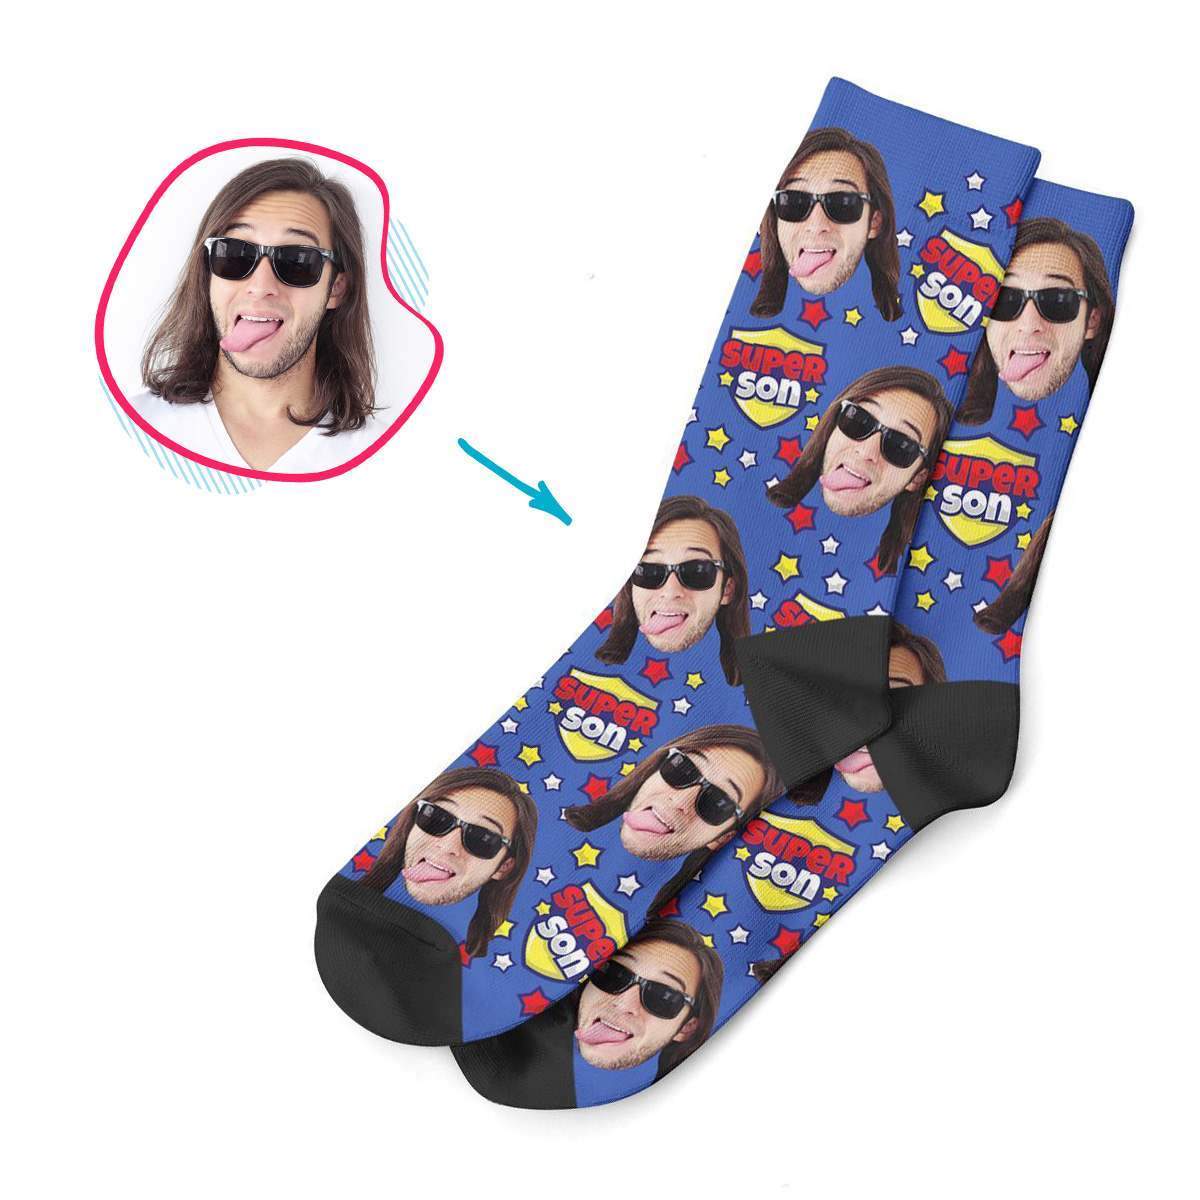 Super Son Personalized Socks